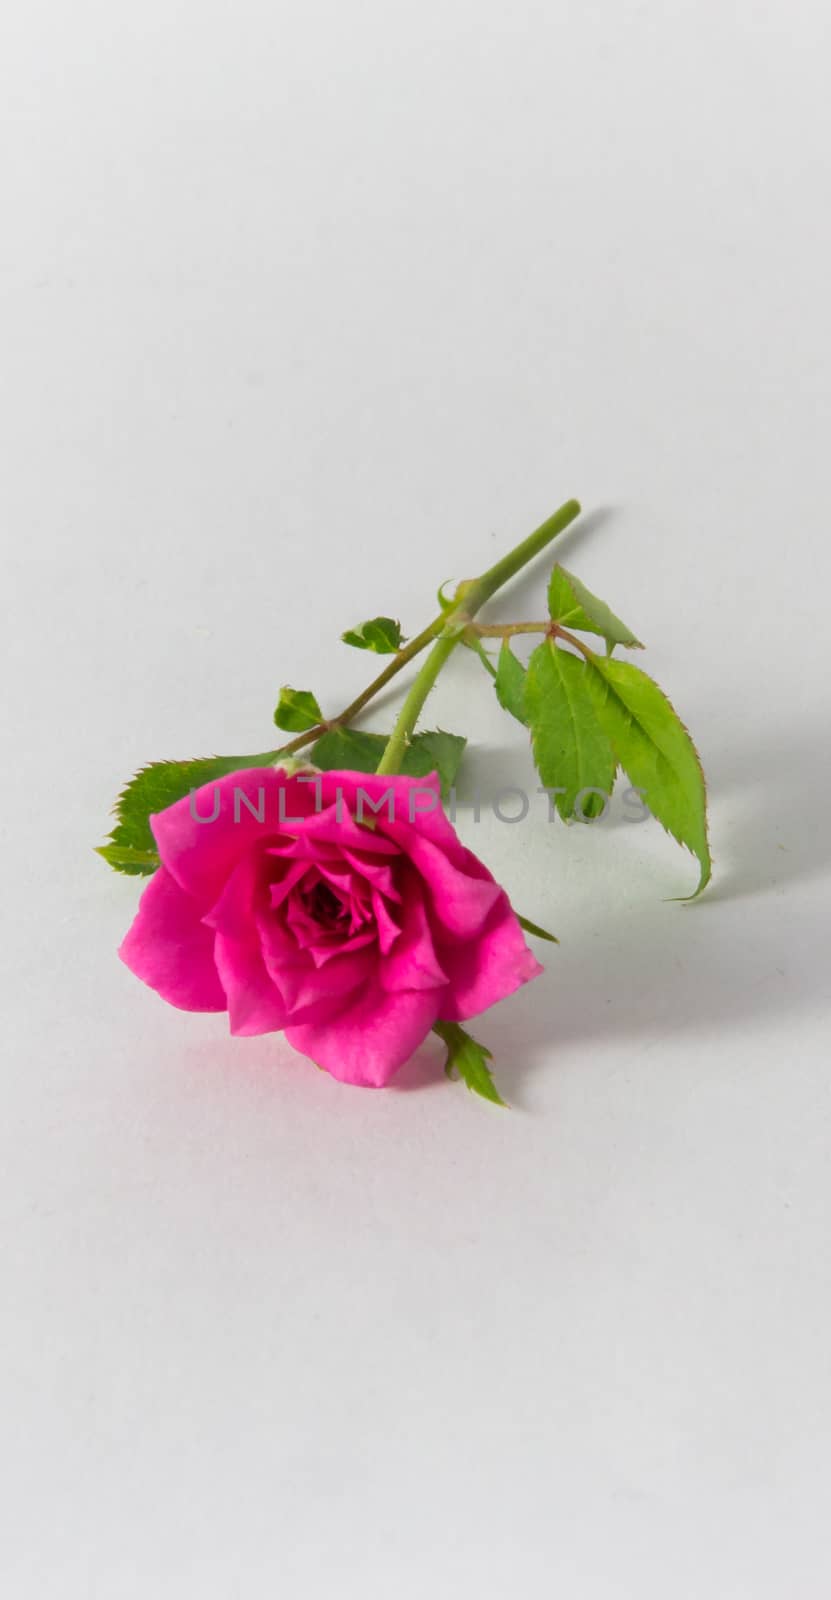 Dwarf Rose by suriyaph